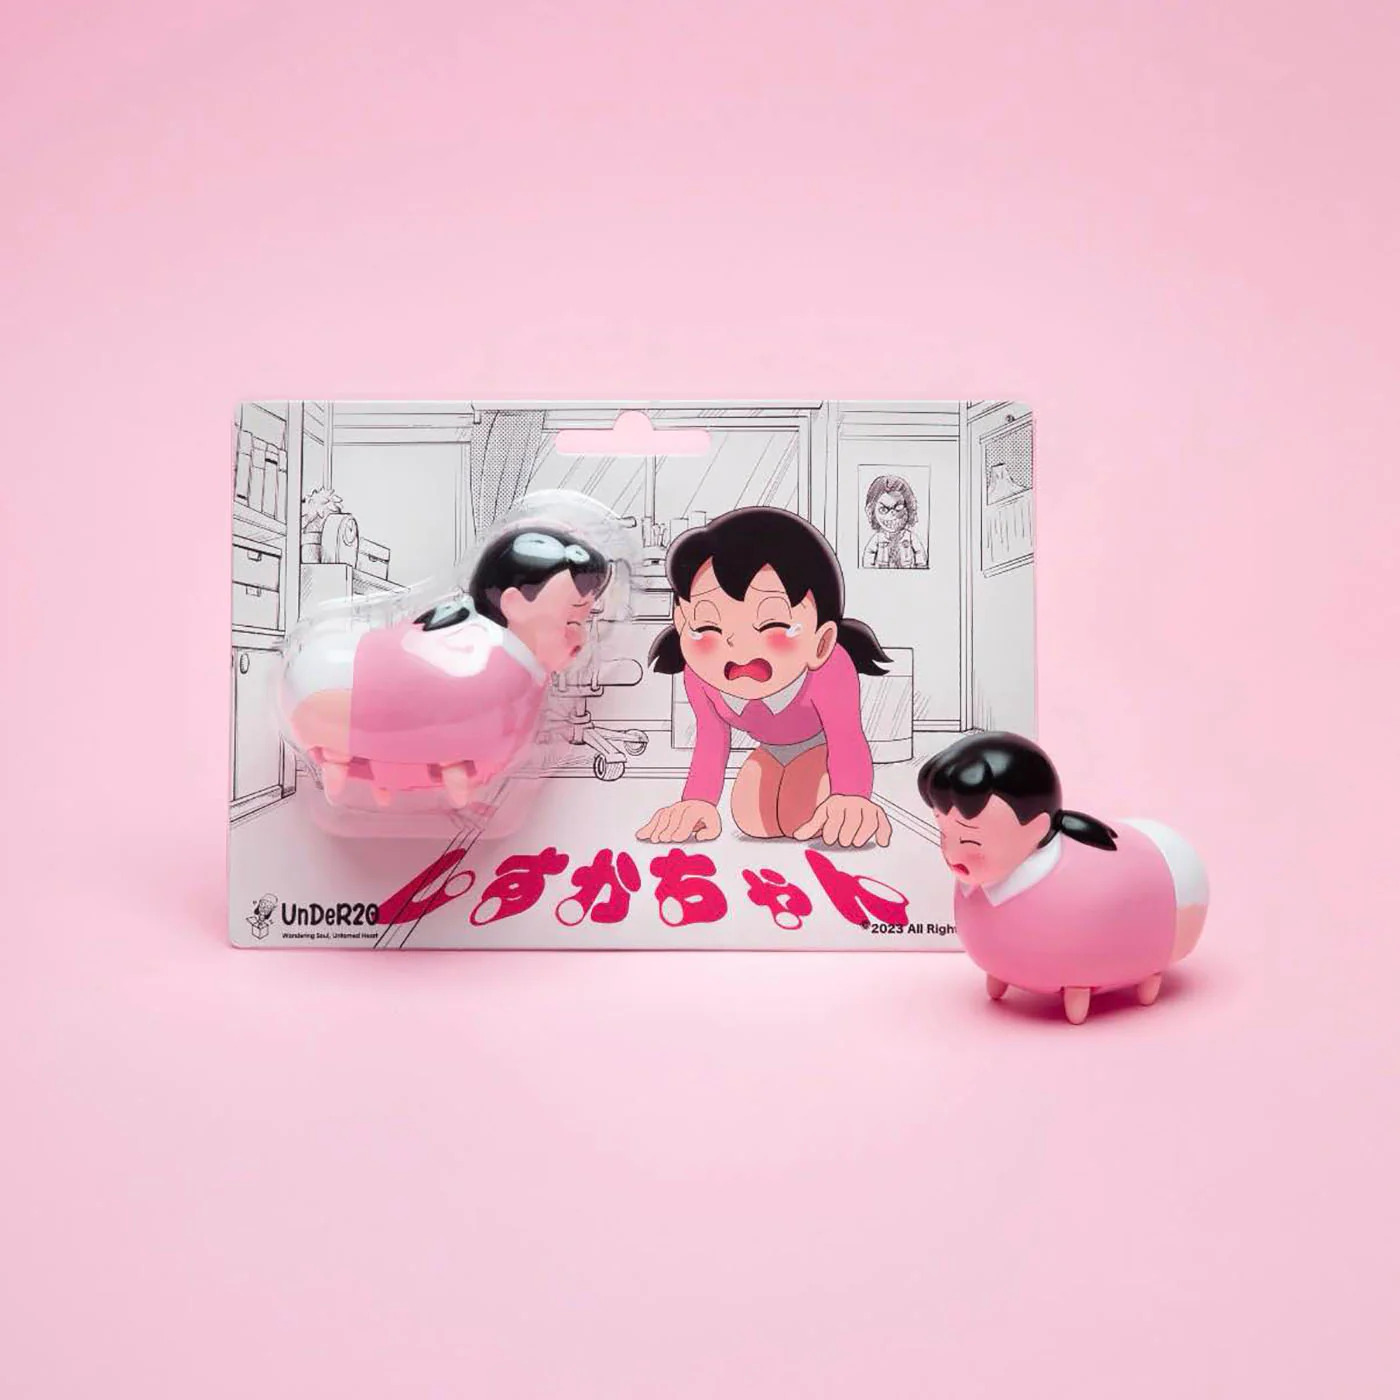 比便携静香还离谱！日本品牌推出犬型“匍匐静香”玩具 发售即售罄